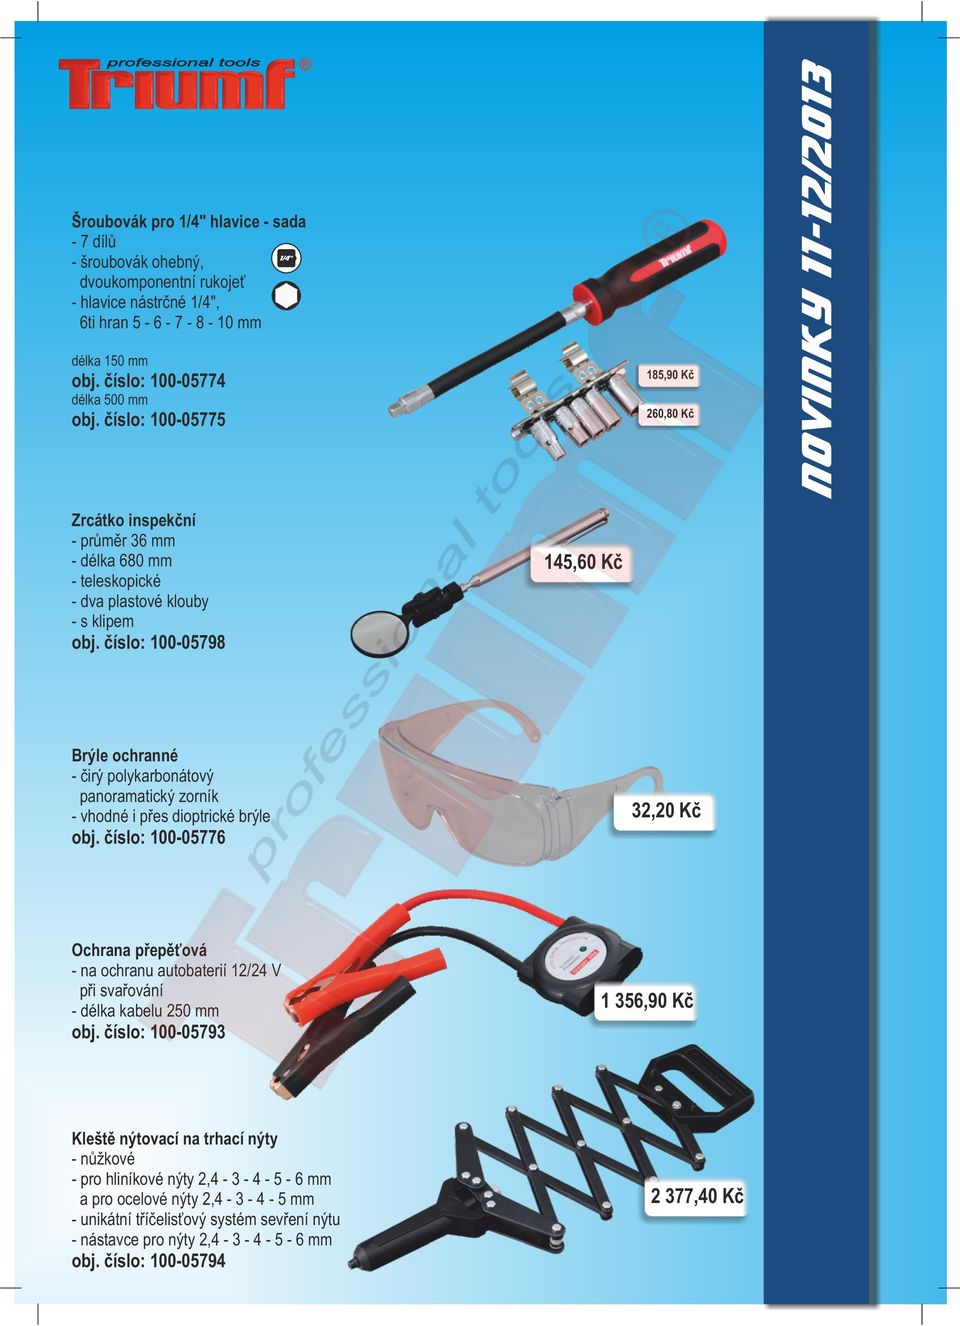 číslo: 100-05776 Ochrana přepěťová - na ochranu autobaterií 12/24 V při svařování - délka kabelu 250 mm 1 356,90 Kč obj.